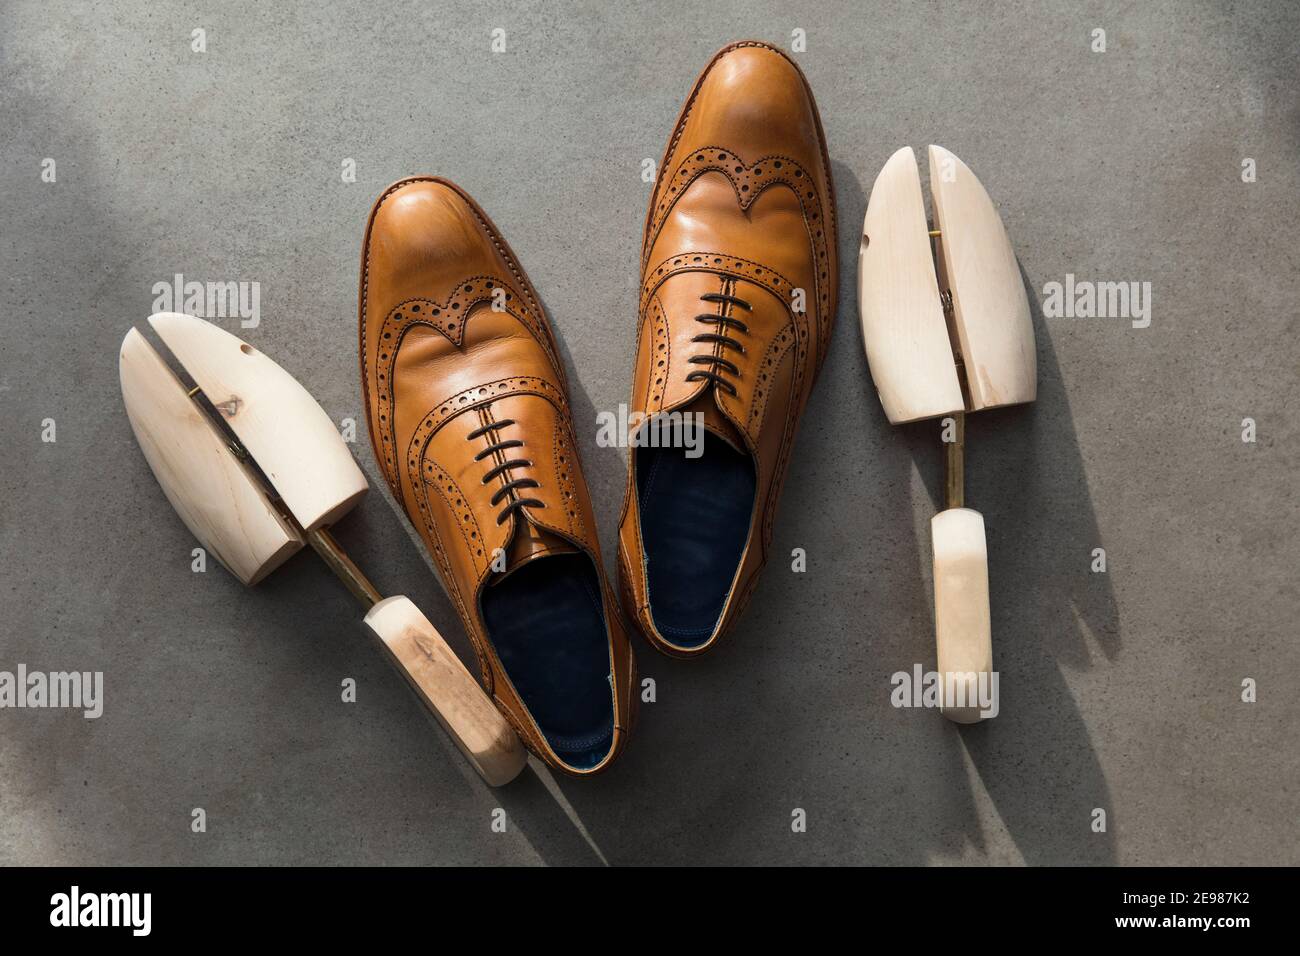 Vue en hauteur d'une paire de hommes en cuir brun clair chaussures habillées sur béton Banque D'Images